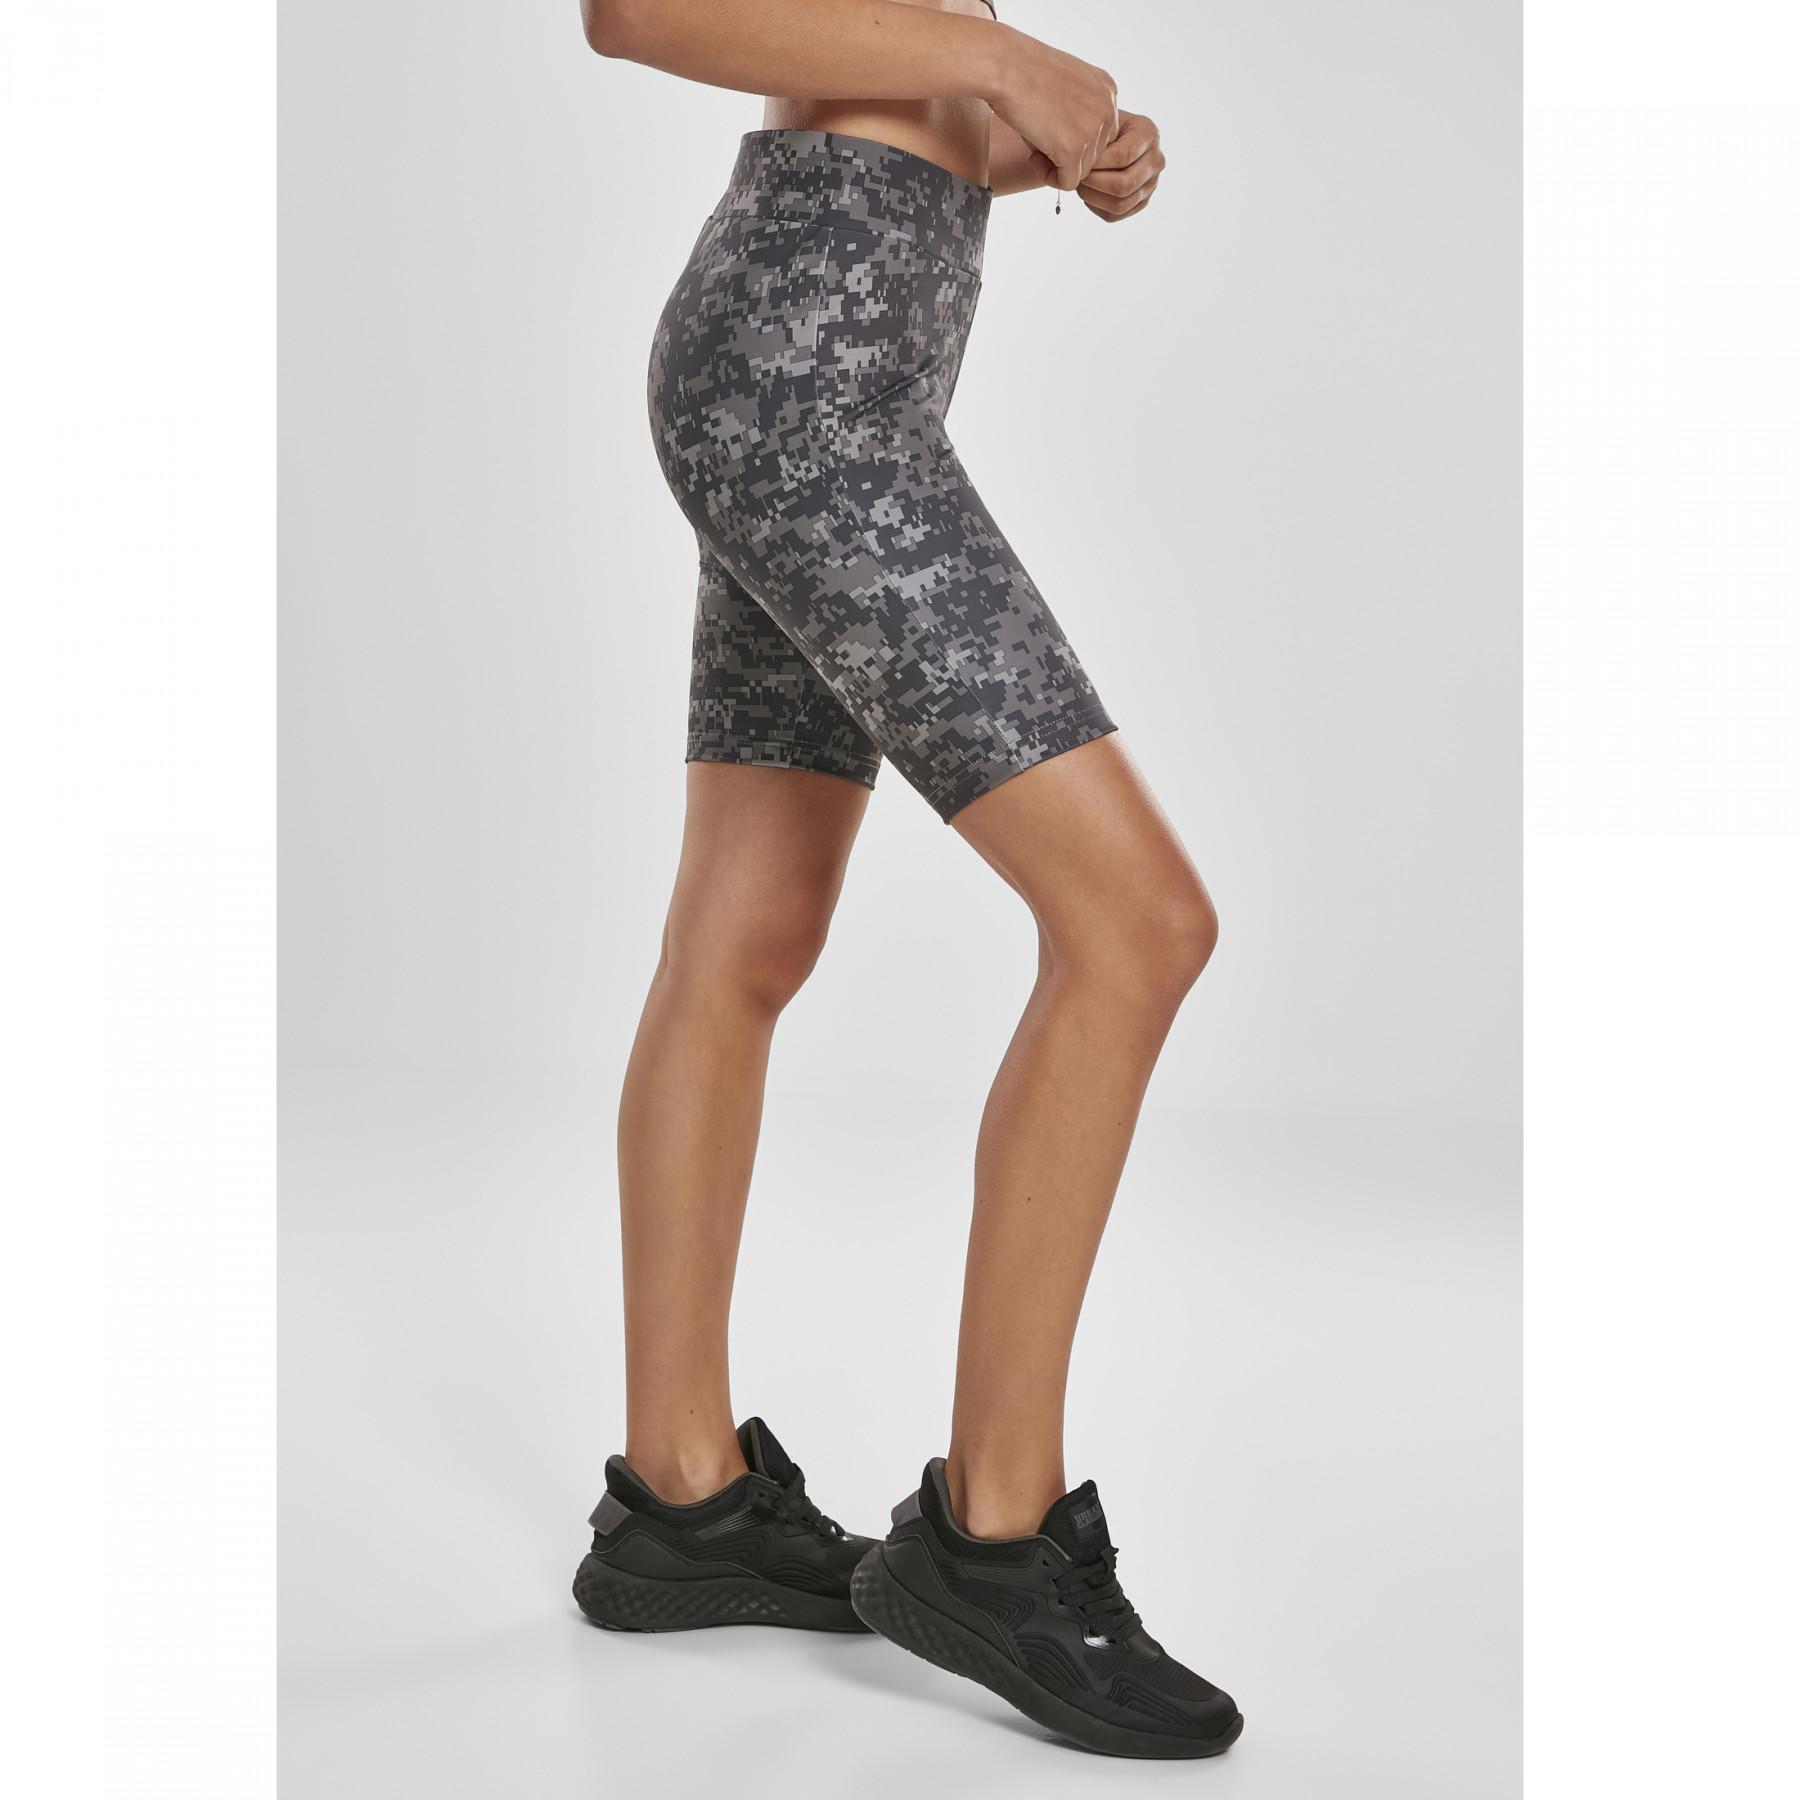 Cycling shorts for women Classics - waist Clothing camo Urban Shorts Women\'s tech - high